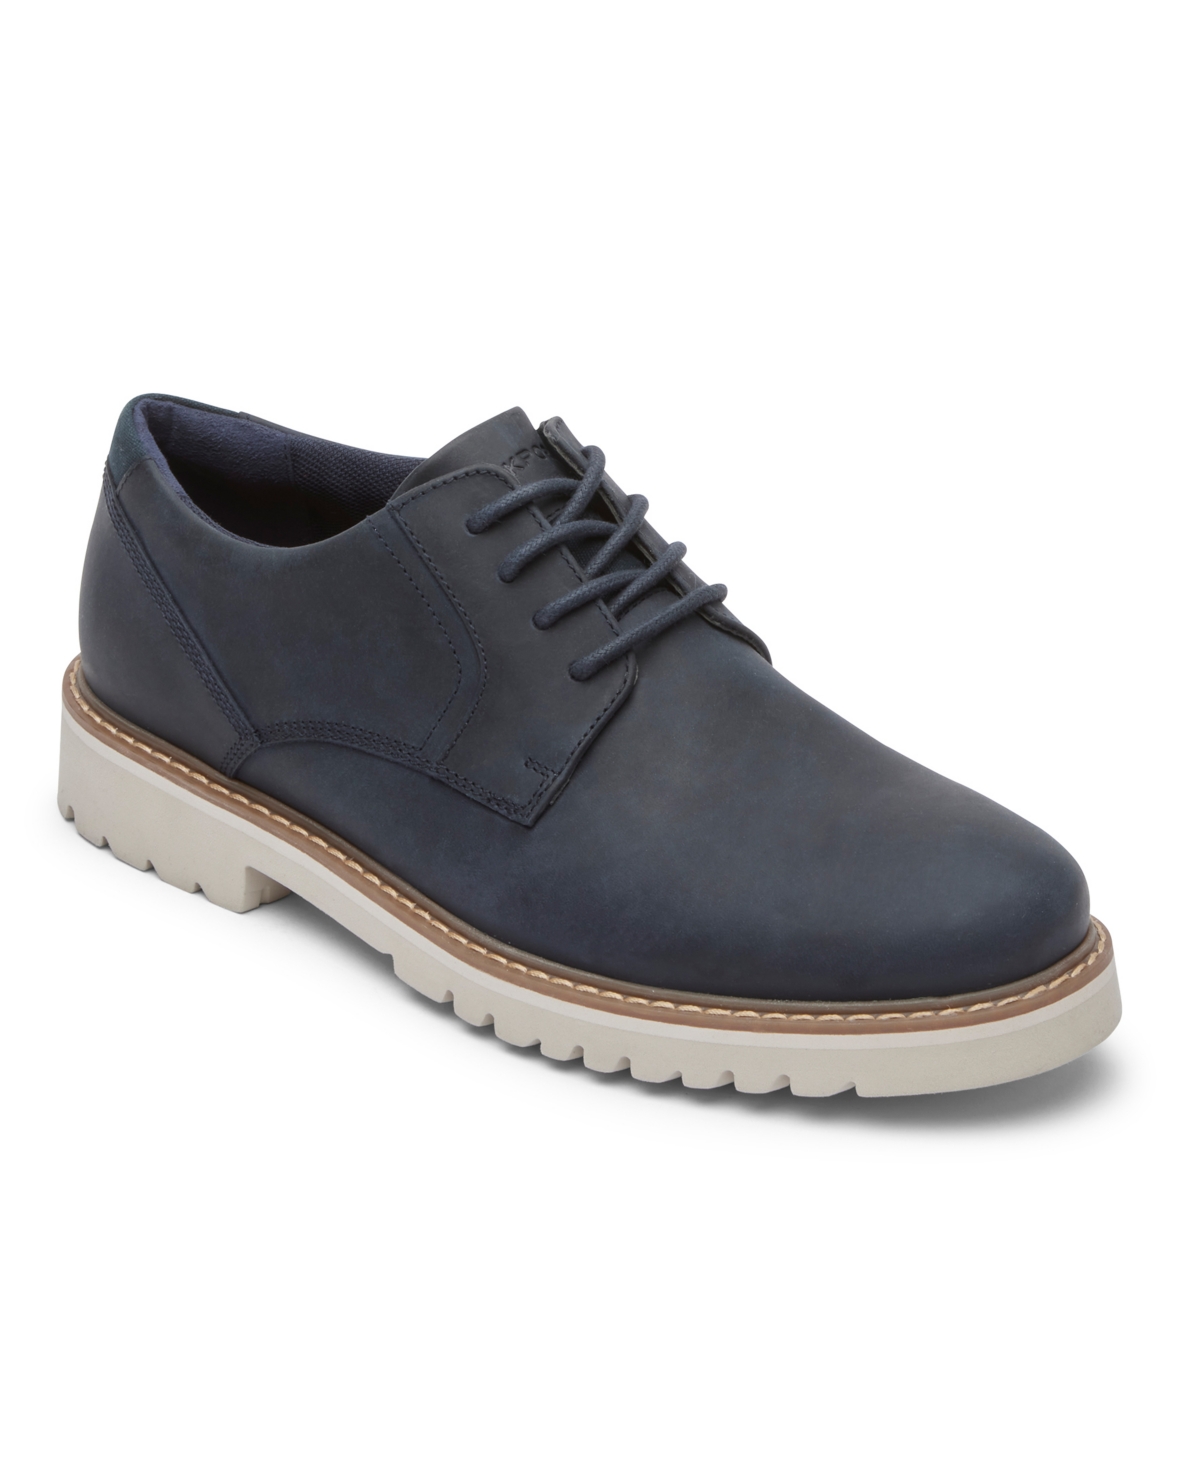 Men's Maverick Plain Toe Oxford Shoes - Navy